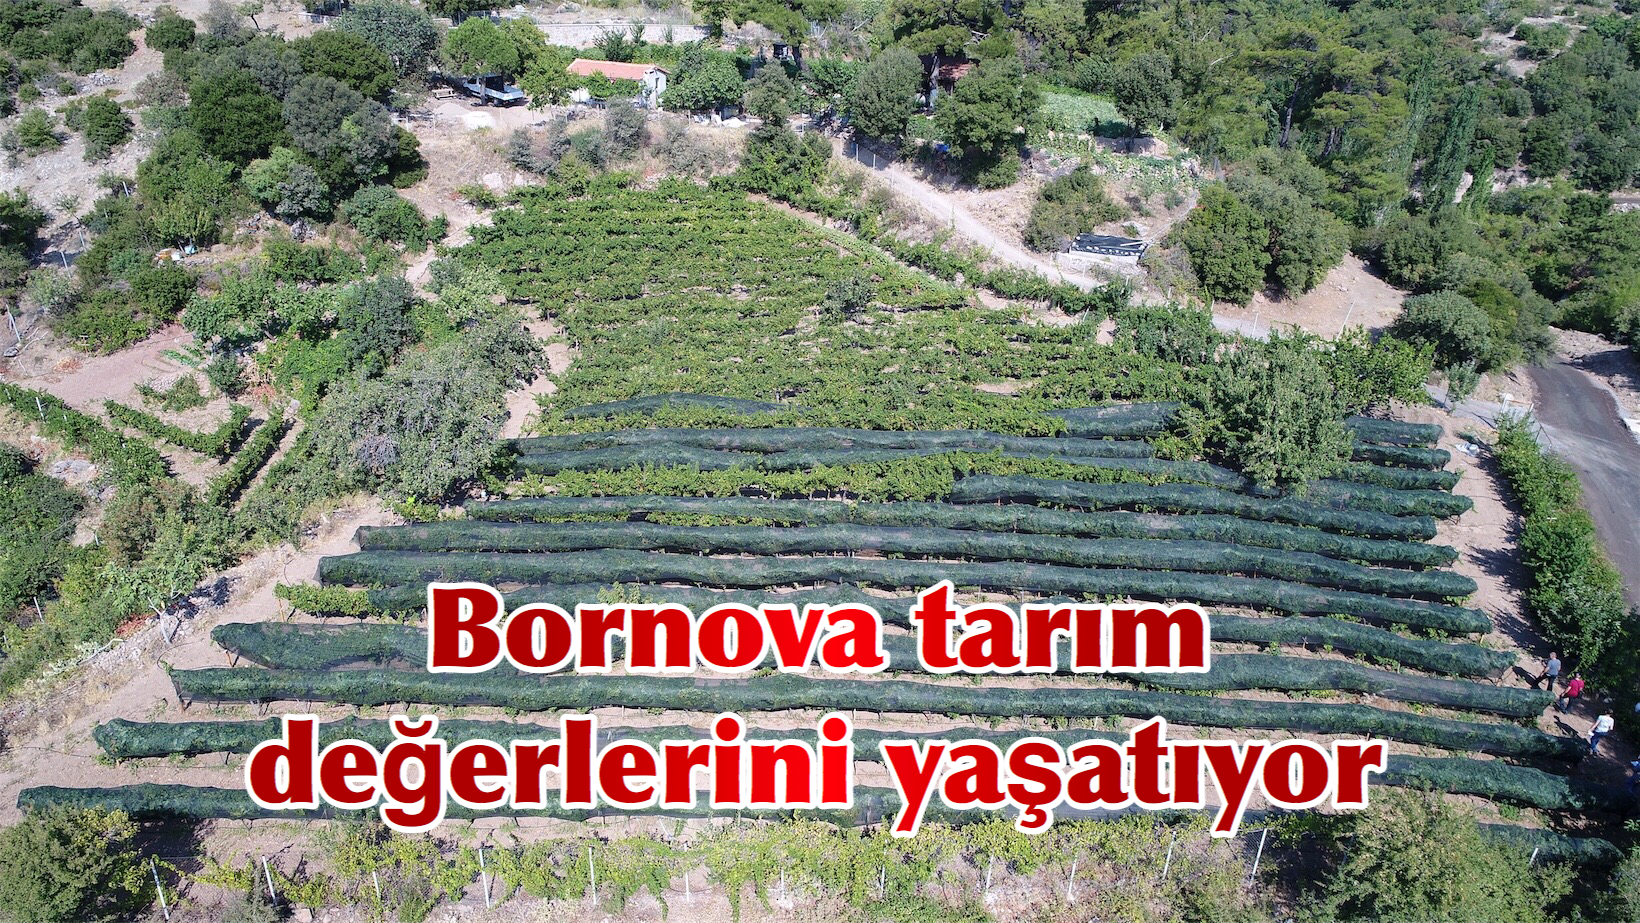 Bornova tarım değerlerini yaşatıyor